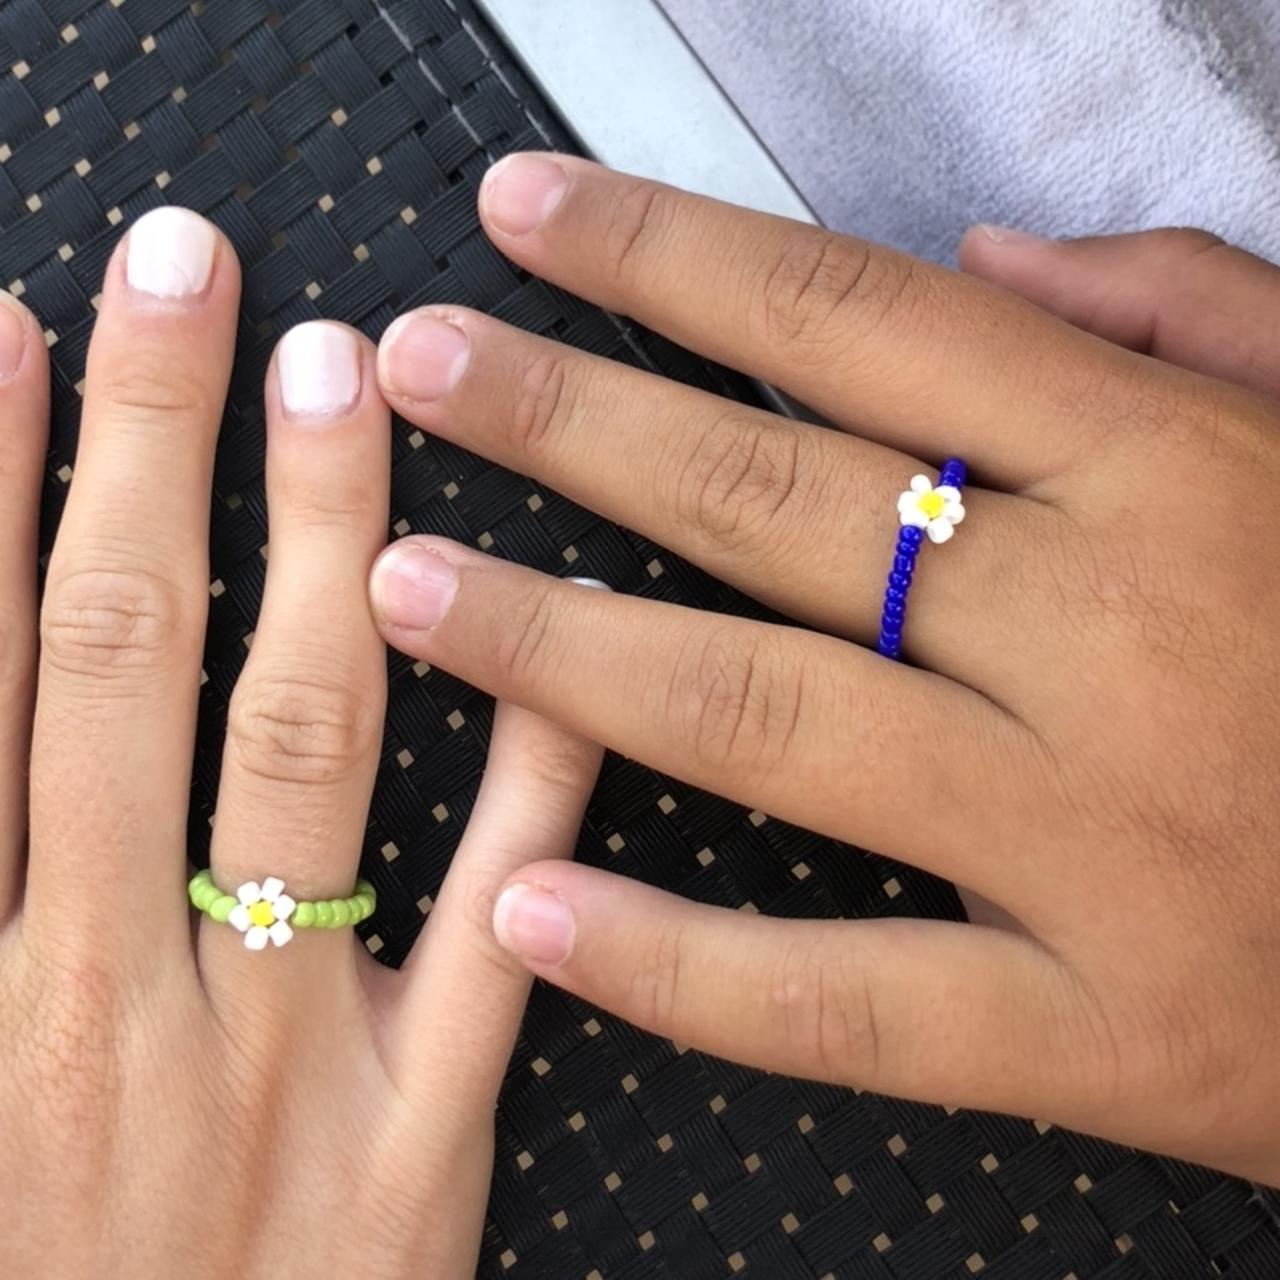 Beaded rings #rings #kawaii #coquette #beads - Depop